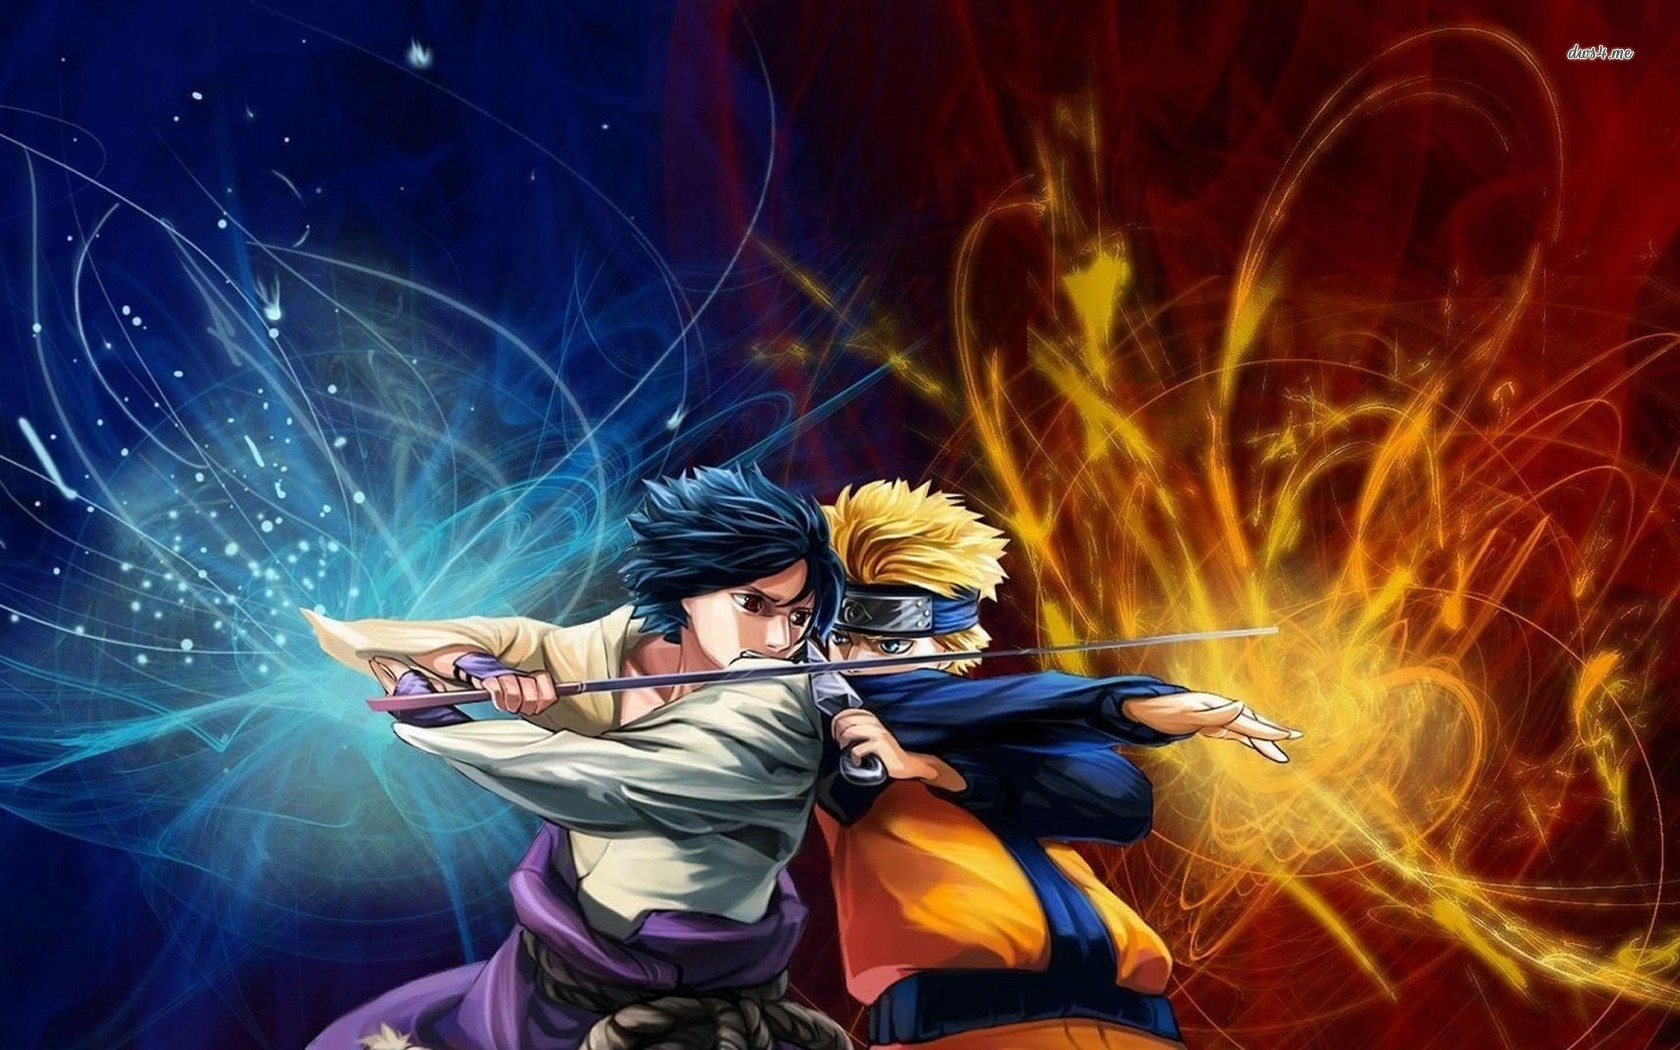 Hình nền desktop Naruto Shippuden Sasuke HD là một cách tuyệt vời để thể hiện sự yêu thích của bạn cho bộ truyện tranh phổ biến này. Các fan sẽ thích thú khi một trong những nhân vật chính của Naruto được đưa lên desktop của họ.